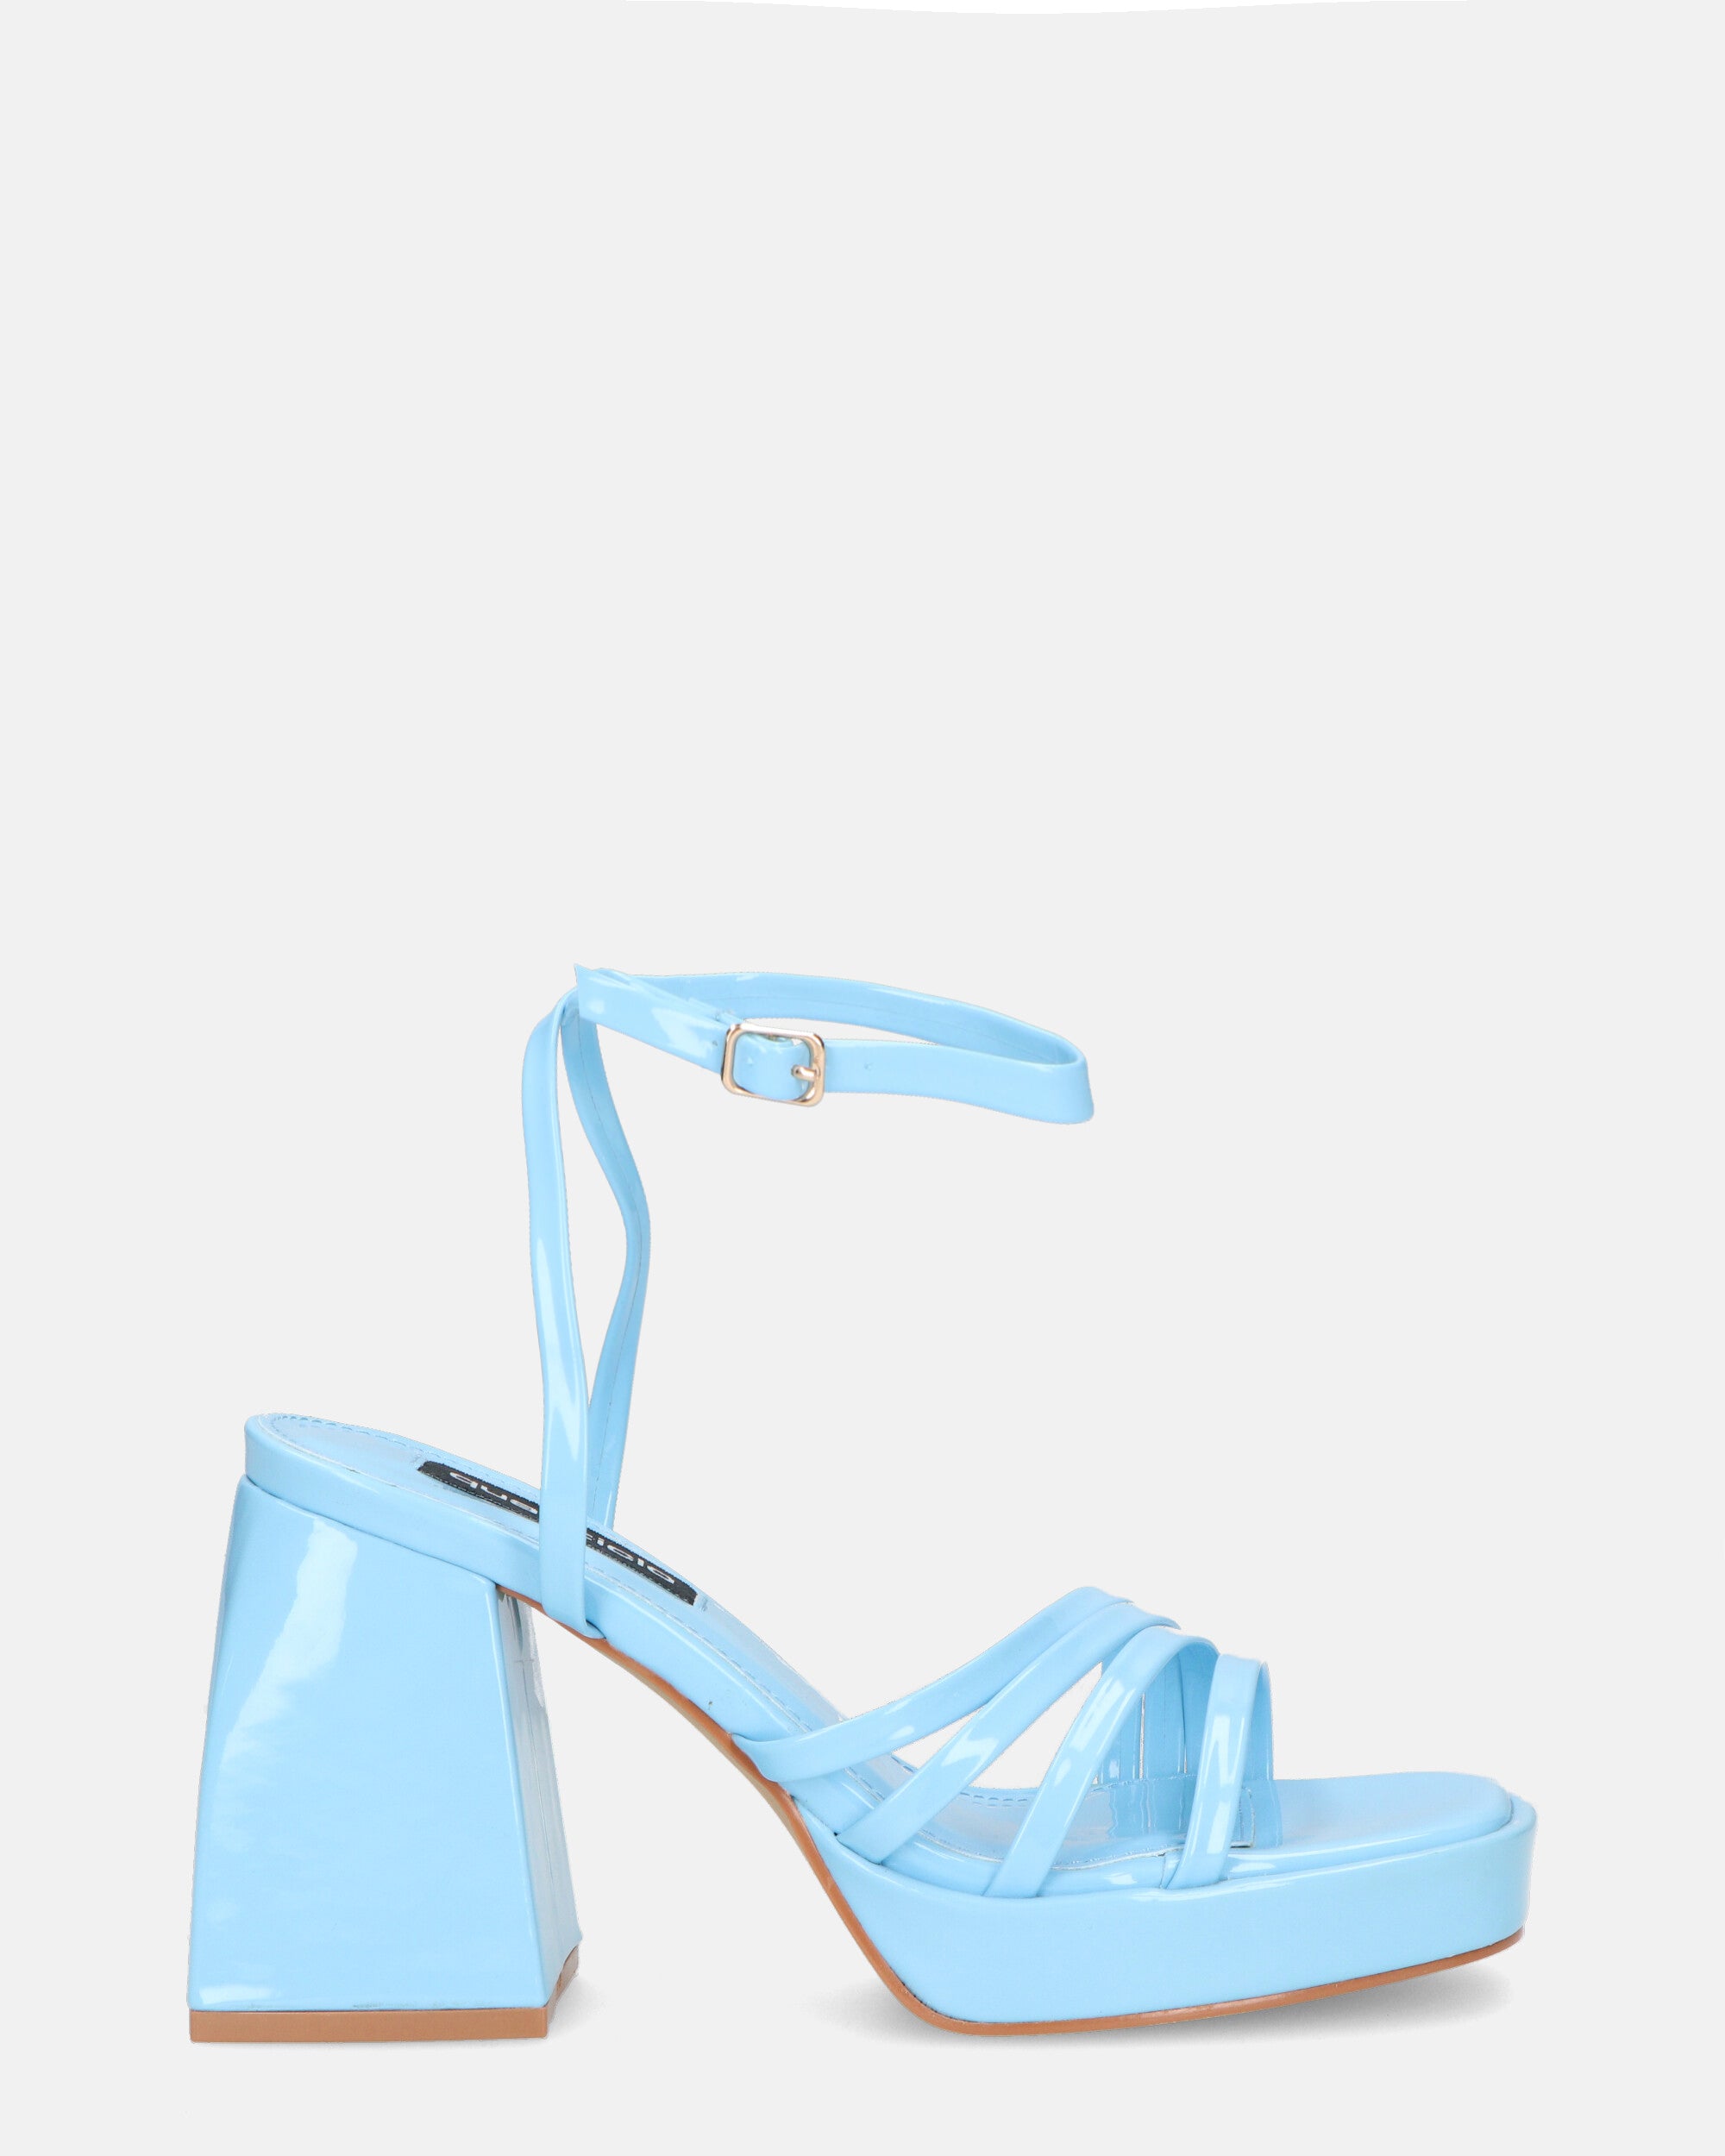 WINONA - sandalias glassy azul claro con tacón cuadrado